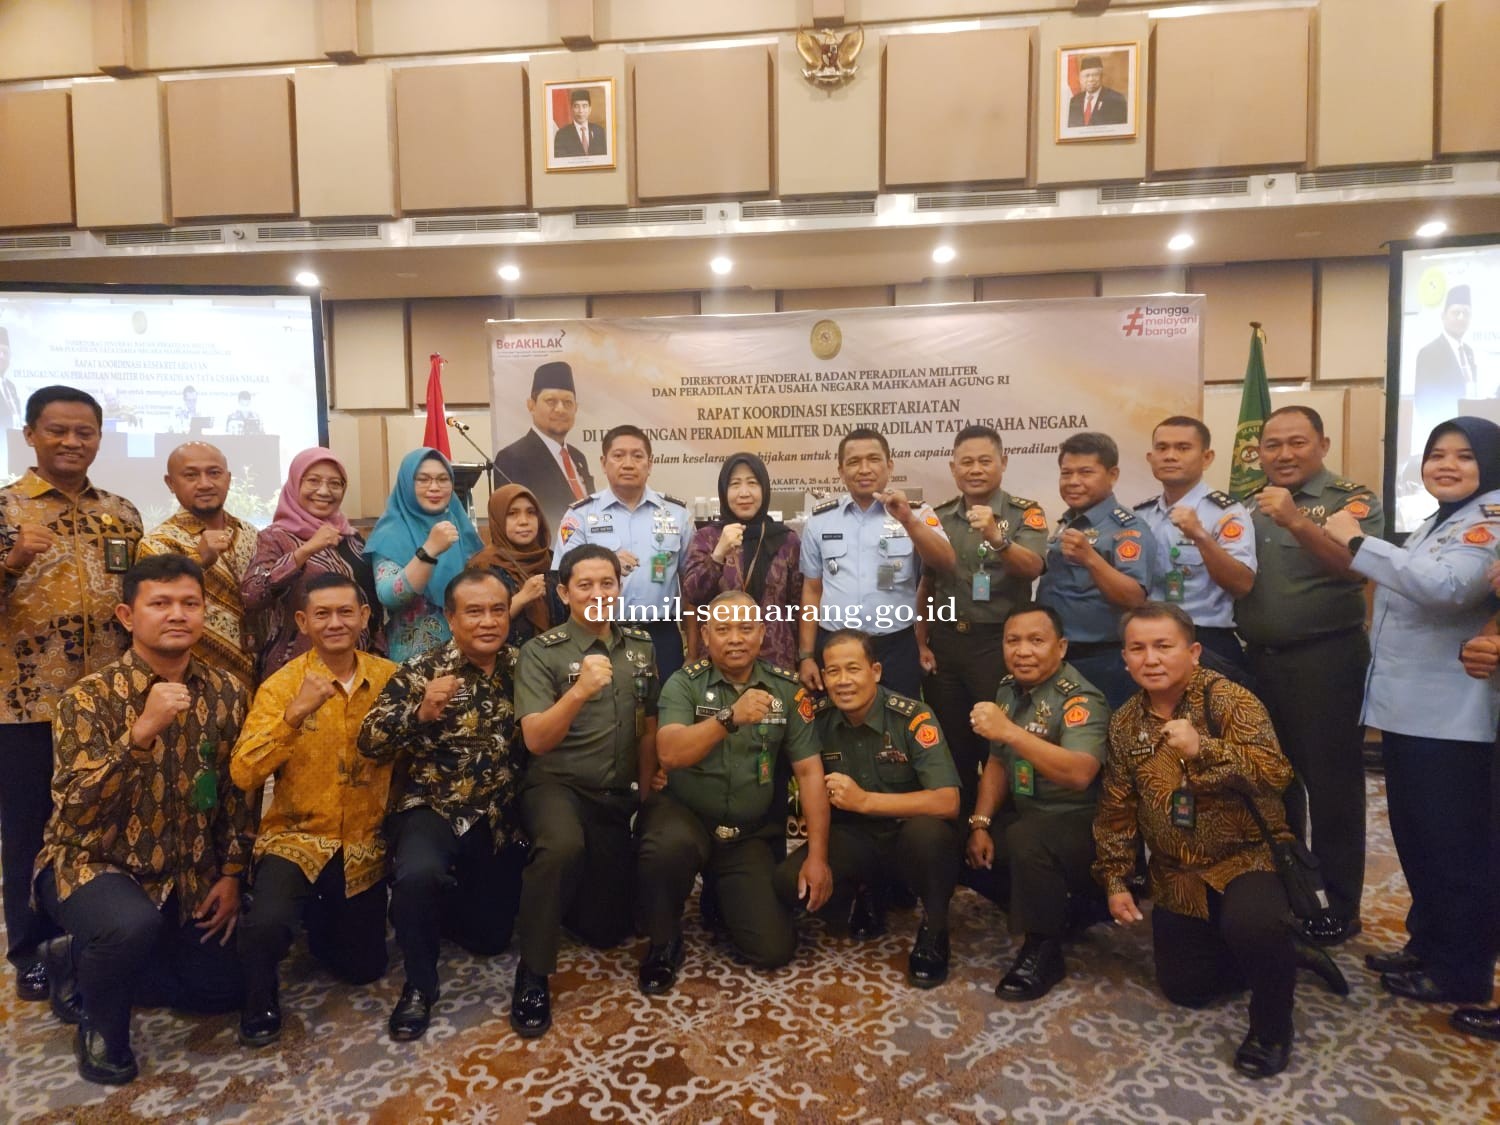 Rapat Koordinasi Kesekretariatan di Lingkungan Peradilan Militer dan Tata Usaha Negara